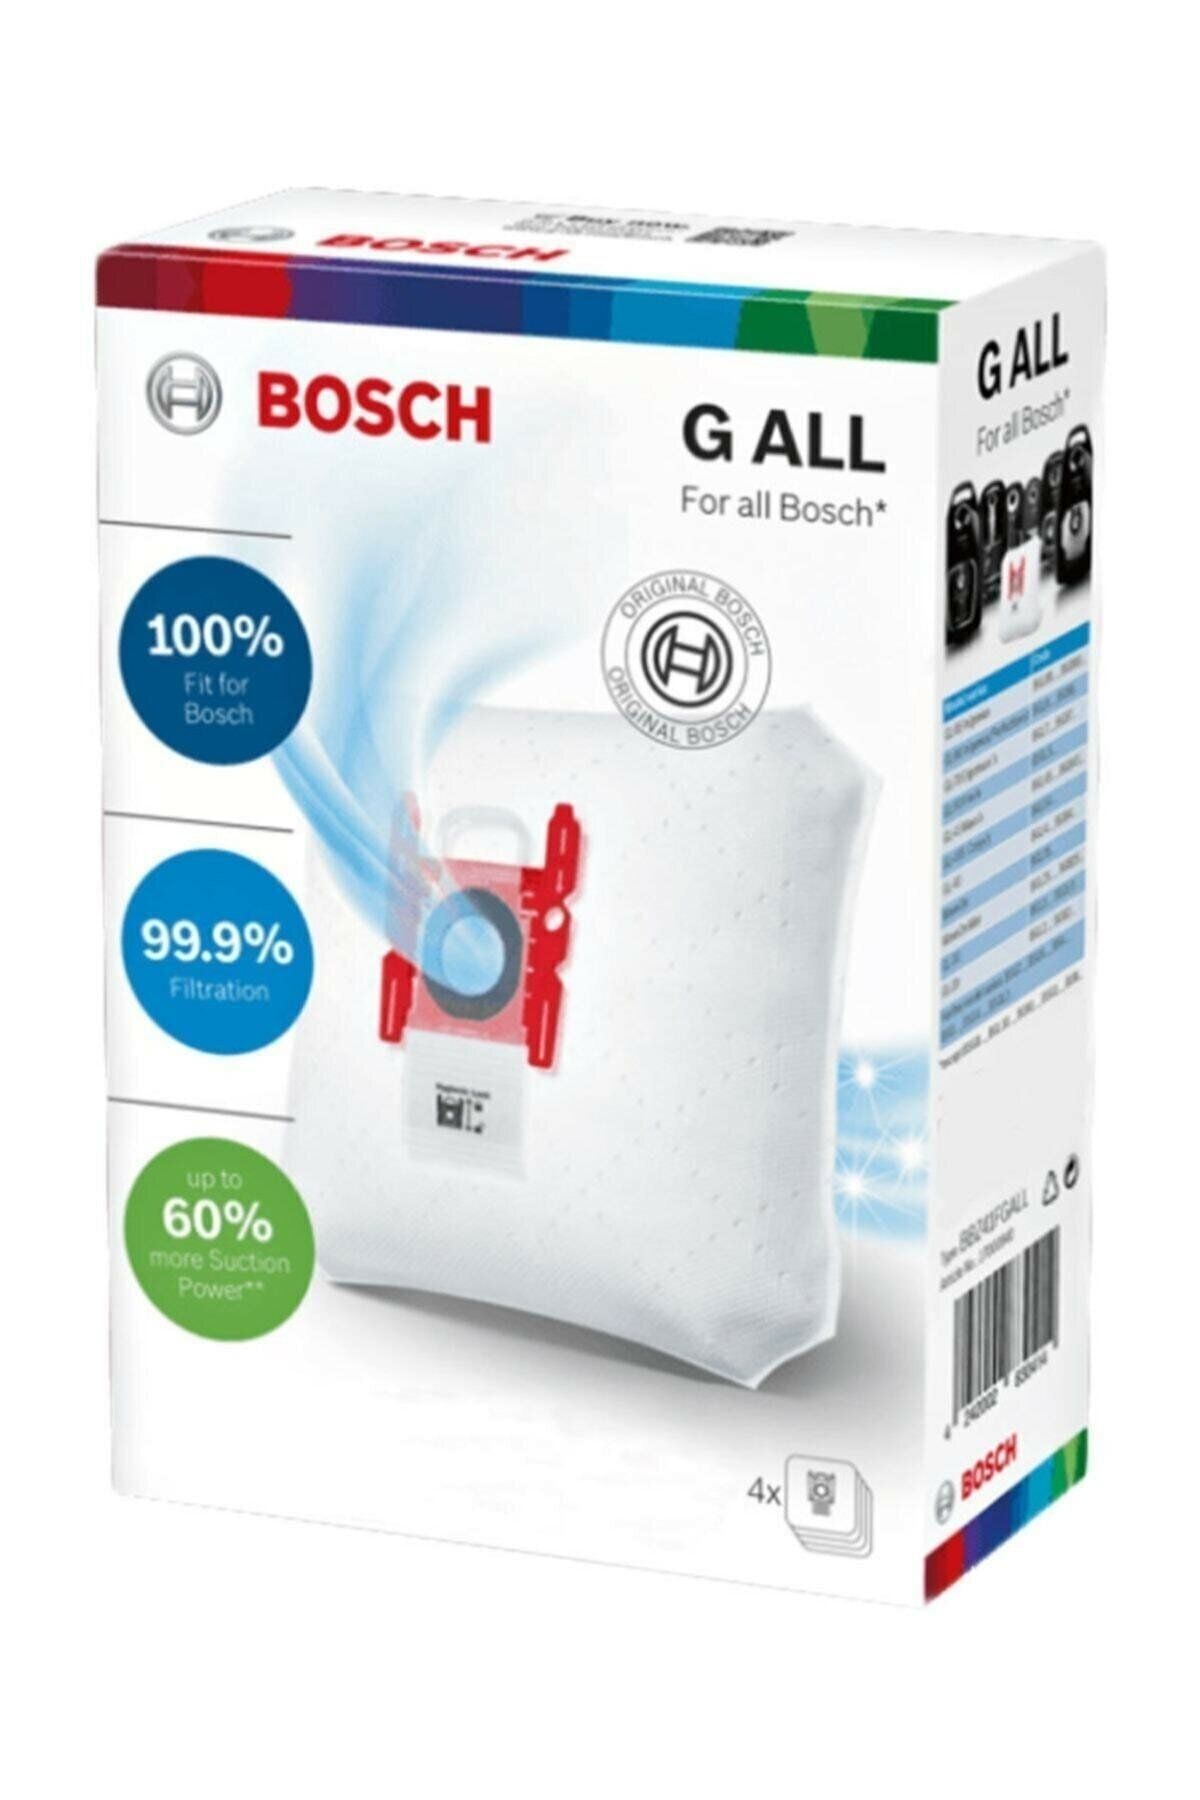 Bosch Bsa 6100-6922 Logo Süpürge G All Toz Torbası 4 Adet Uyumlu